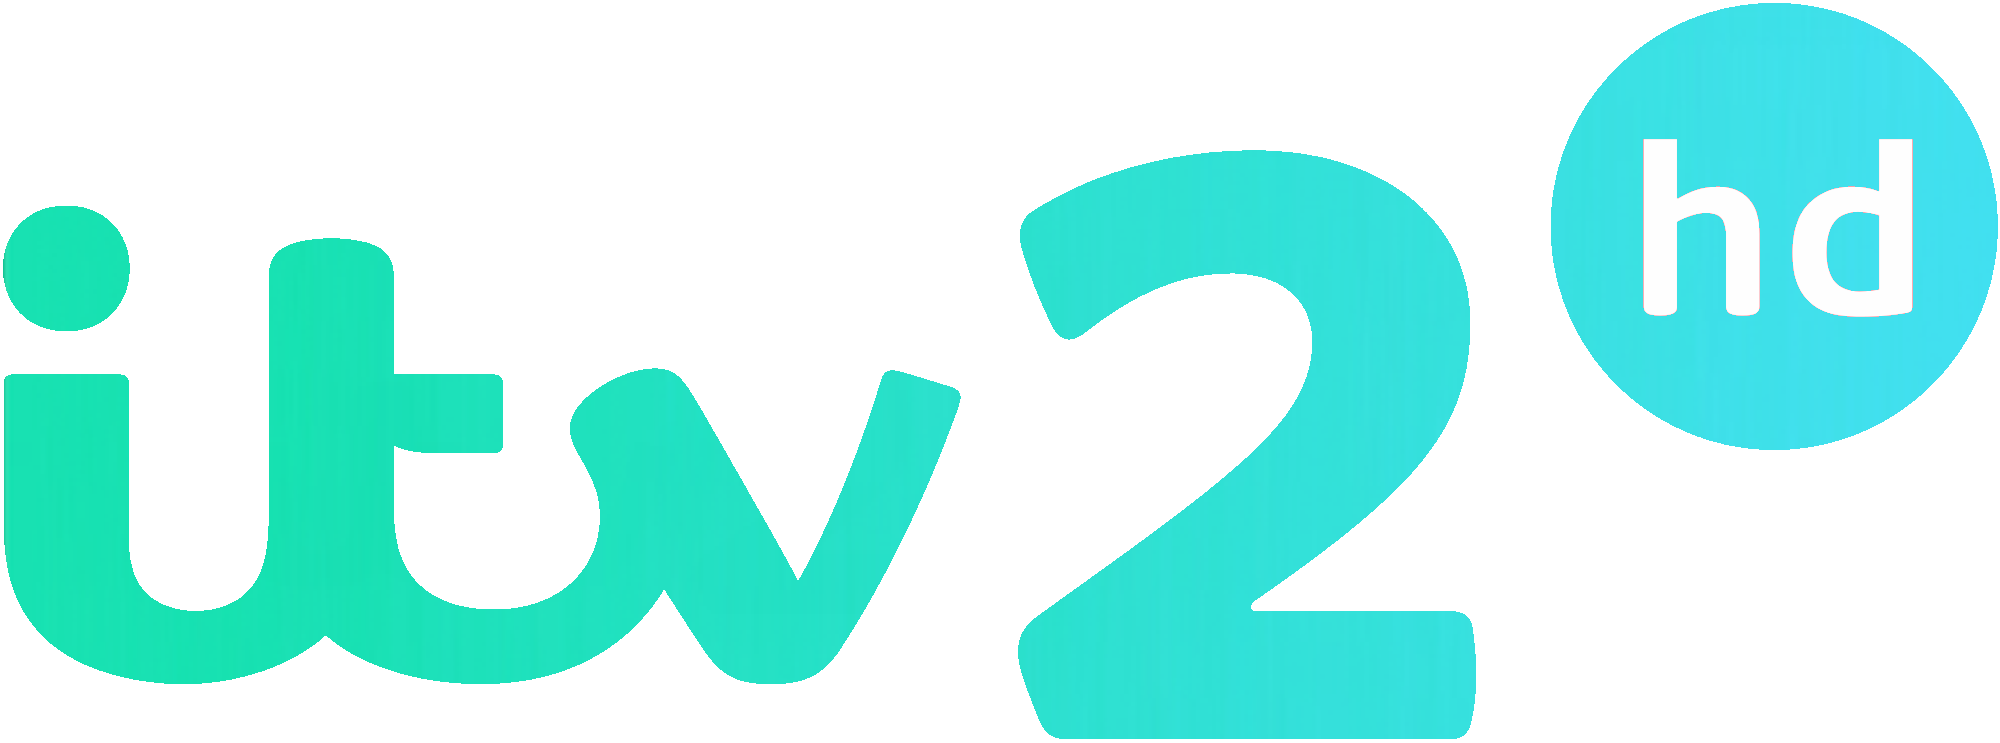 ITV  1 logo vector download